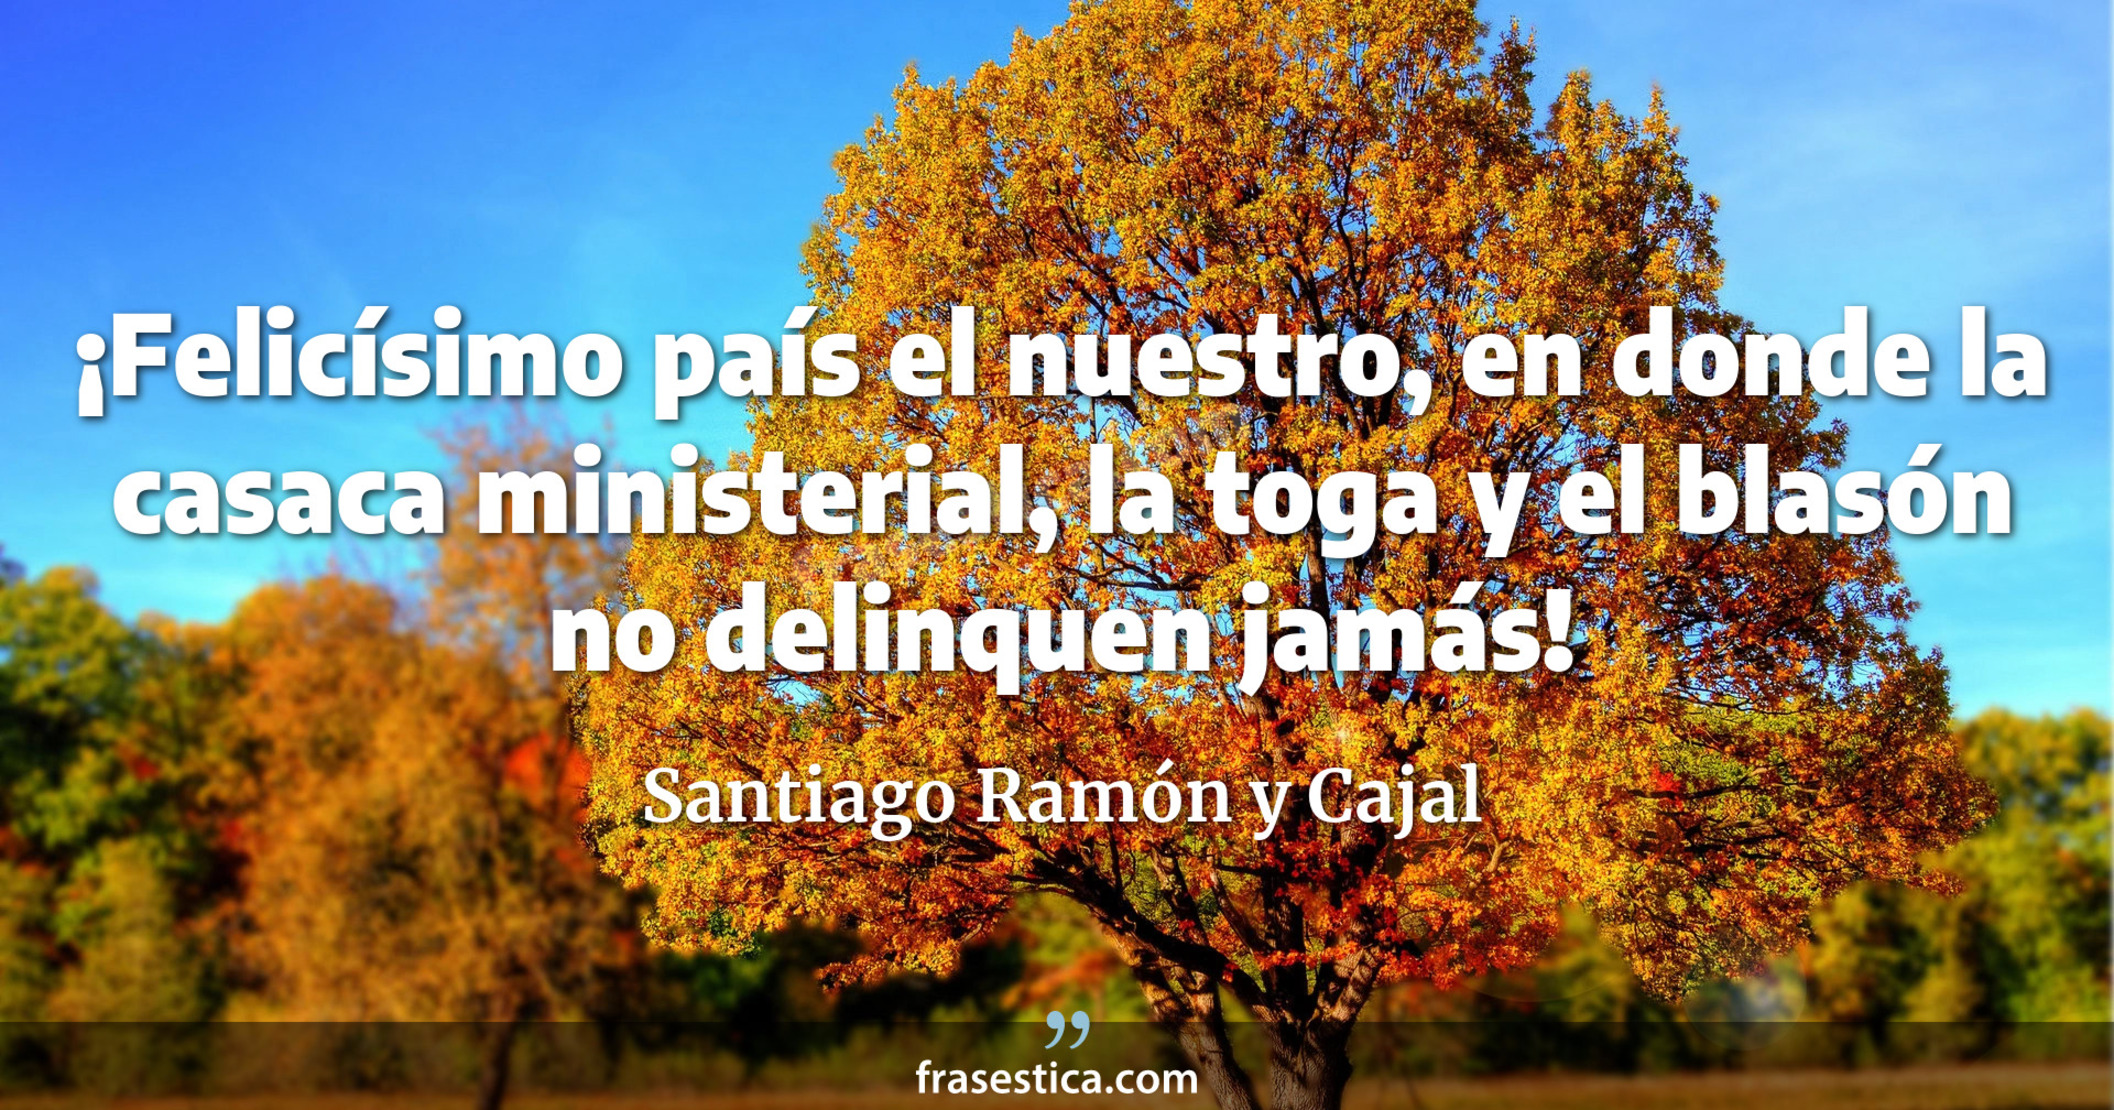 ¡Felicísimo país el nuestro, en donde la casaca ministerial, la toga y el blasón no delinquen jamás! - Santiago Ramón y Cajal